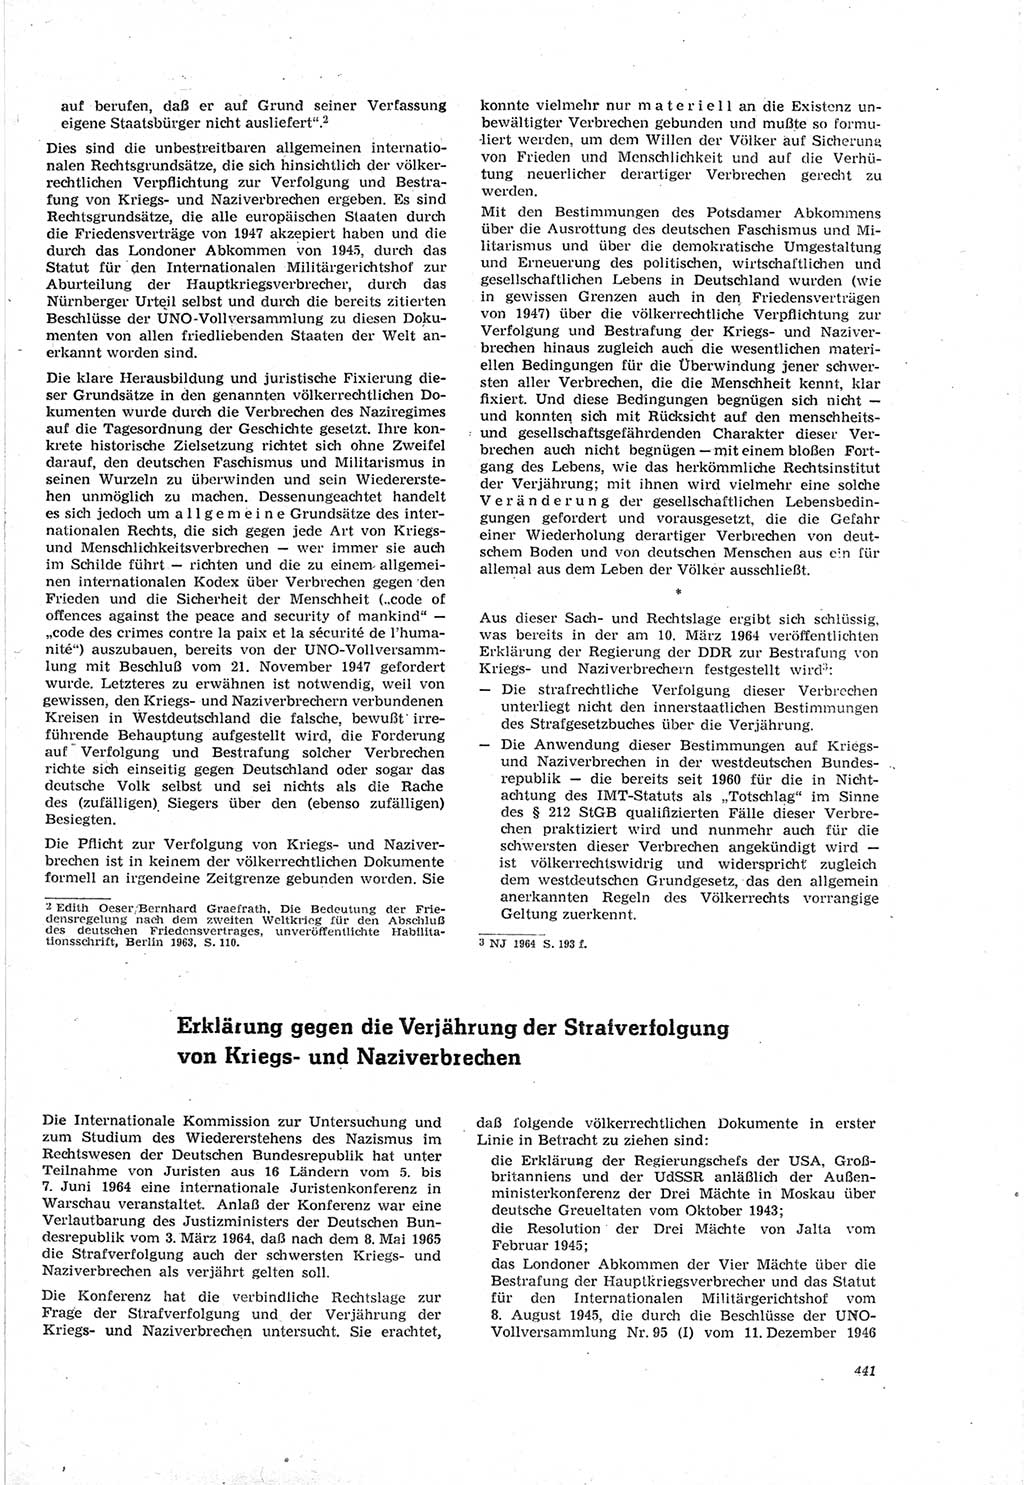 Neue Justiz (NJ), Zeitschrift für Recht und Rechtswissenschaft [Deutsche Demokratische Republik (DDR)], 18. Jahrgang 1964, Seite 441 (NJ DDR 1964, S. 441)